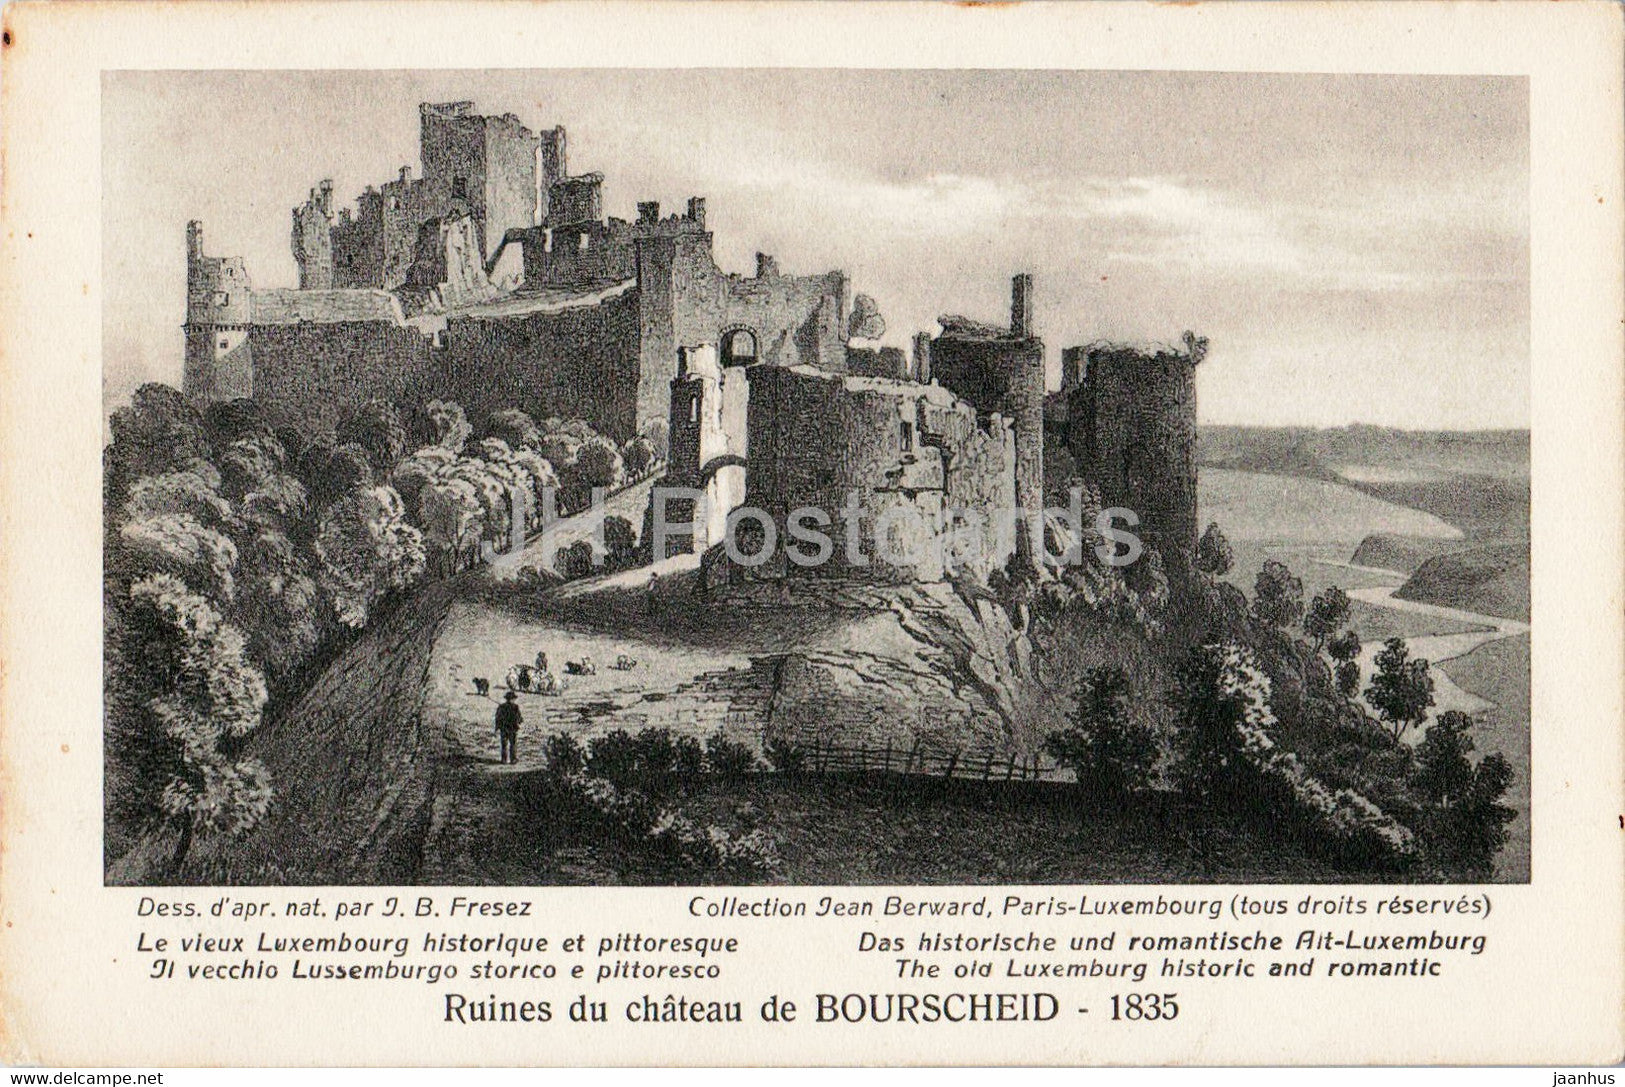 Le vieux Luxembourg historique et pittoresque - Ruines du chateau de Bourscheid - old postcard - Luxembourg - unused - JH Postcards